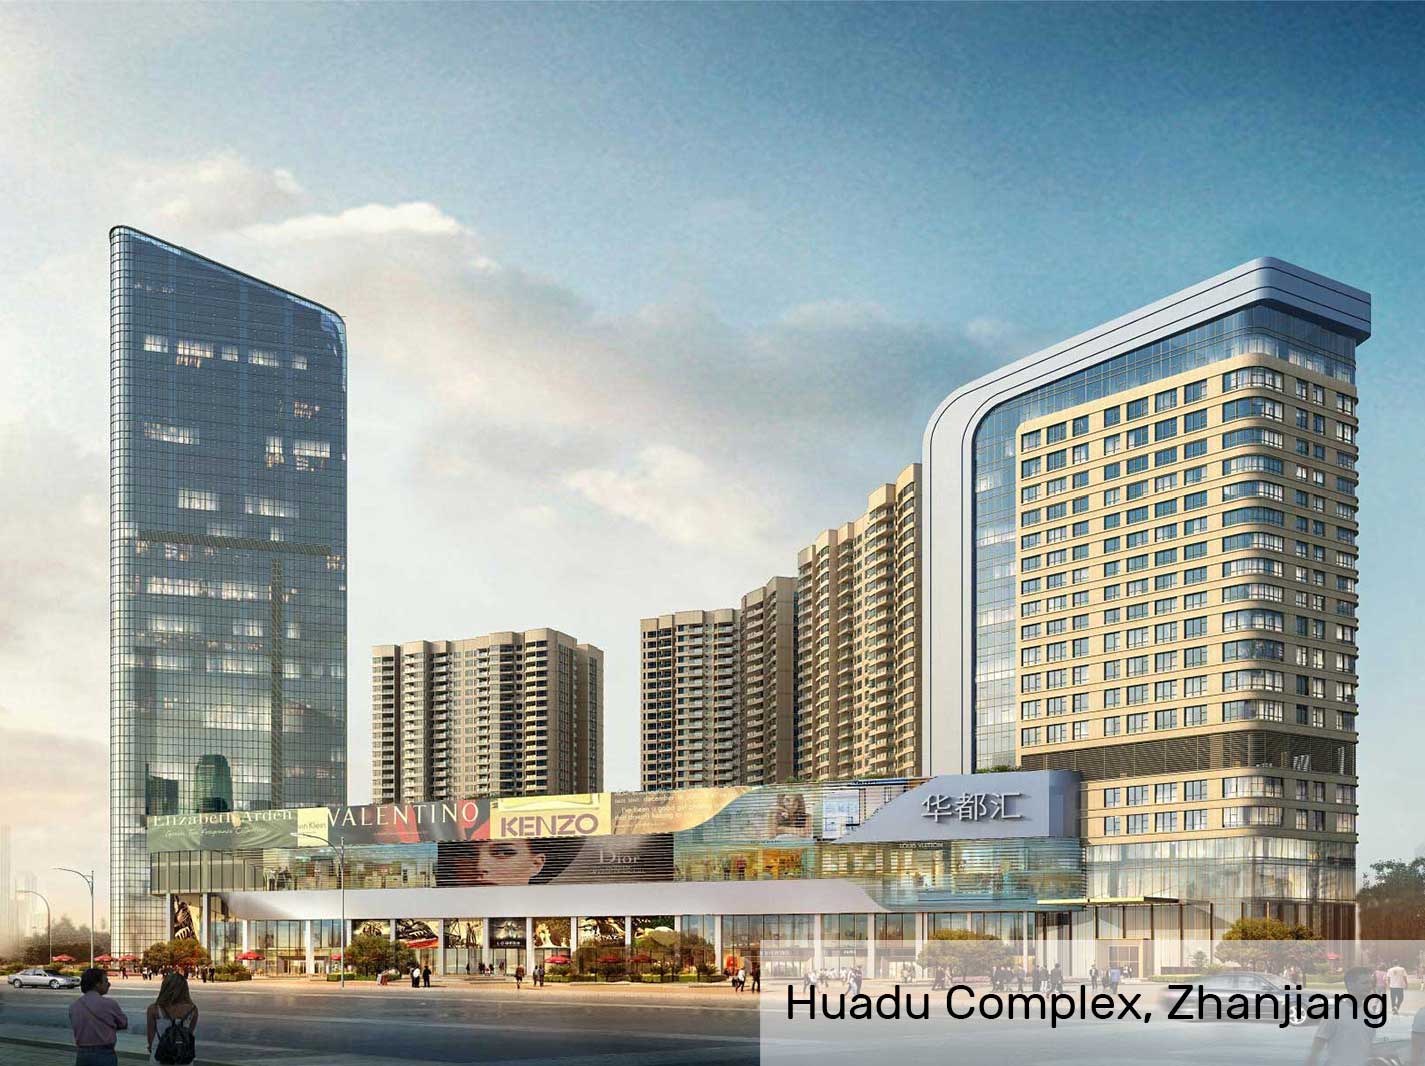 Huadu Complex, Zhanjiang